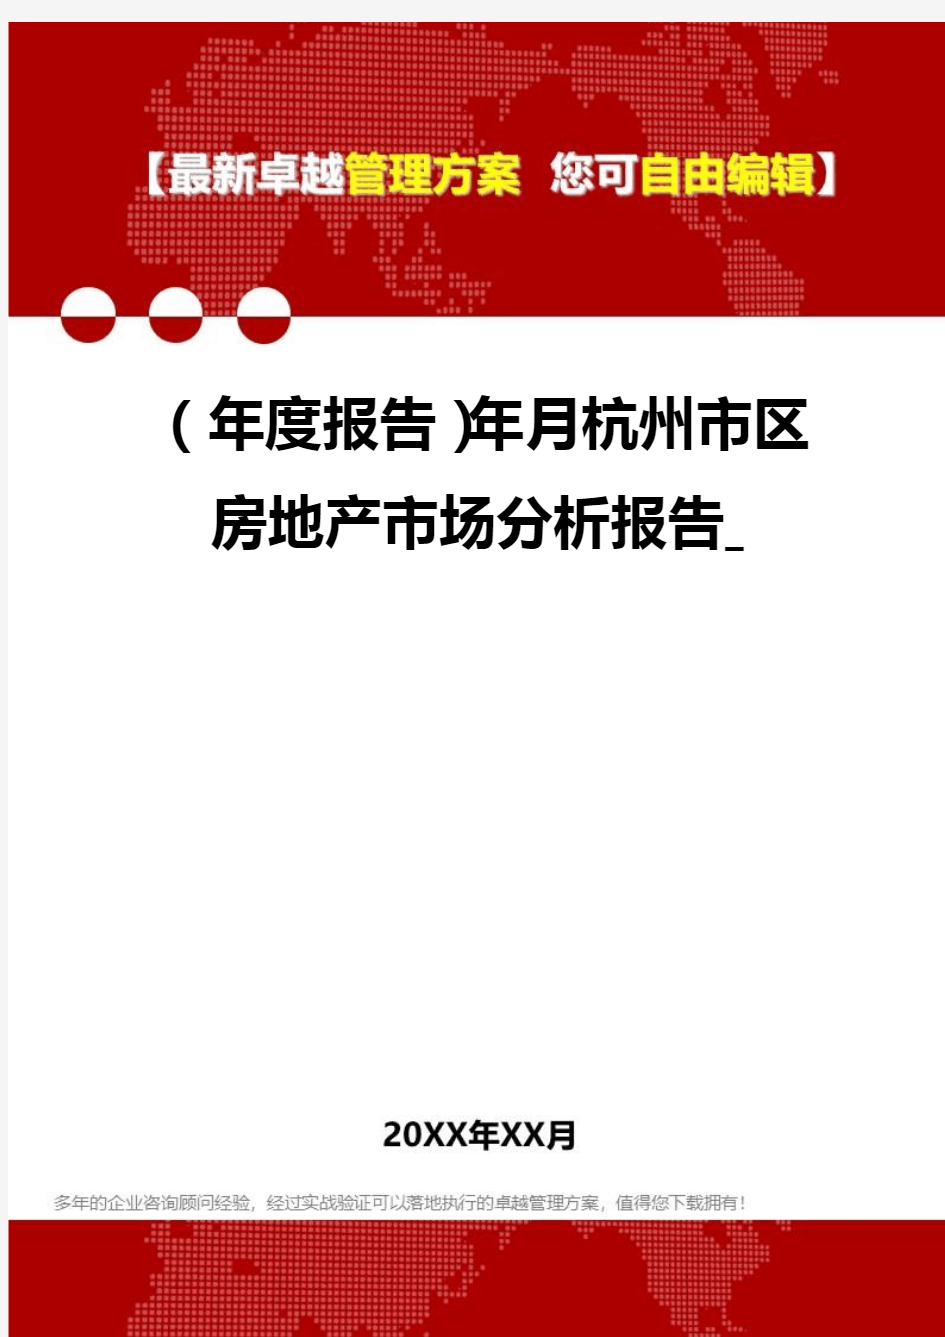 2020年(年度报告)年月杭州市区房地产市场分析报告_